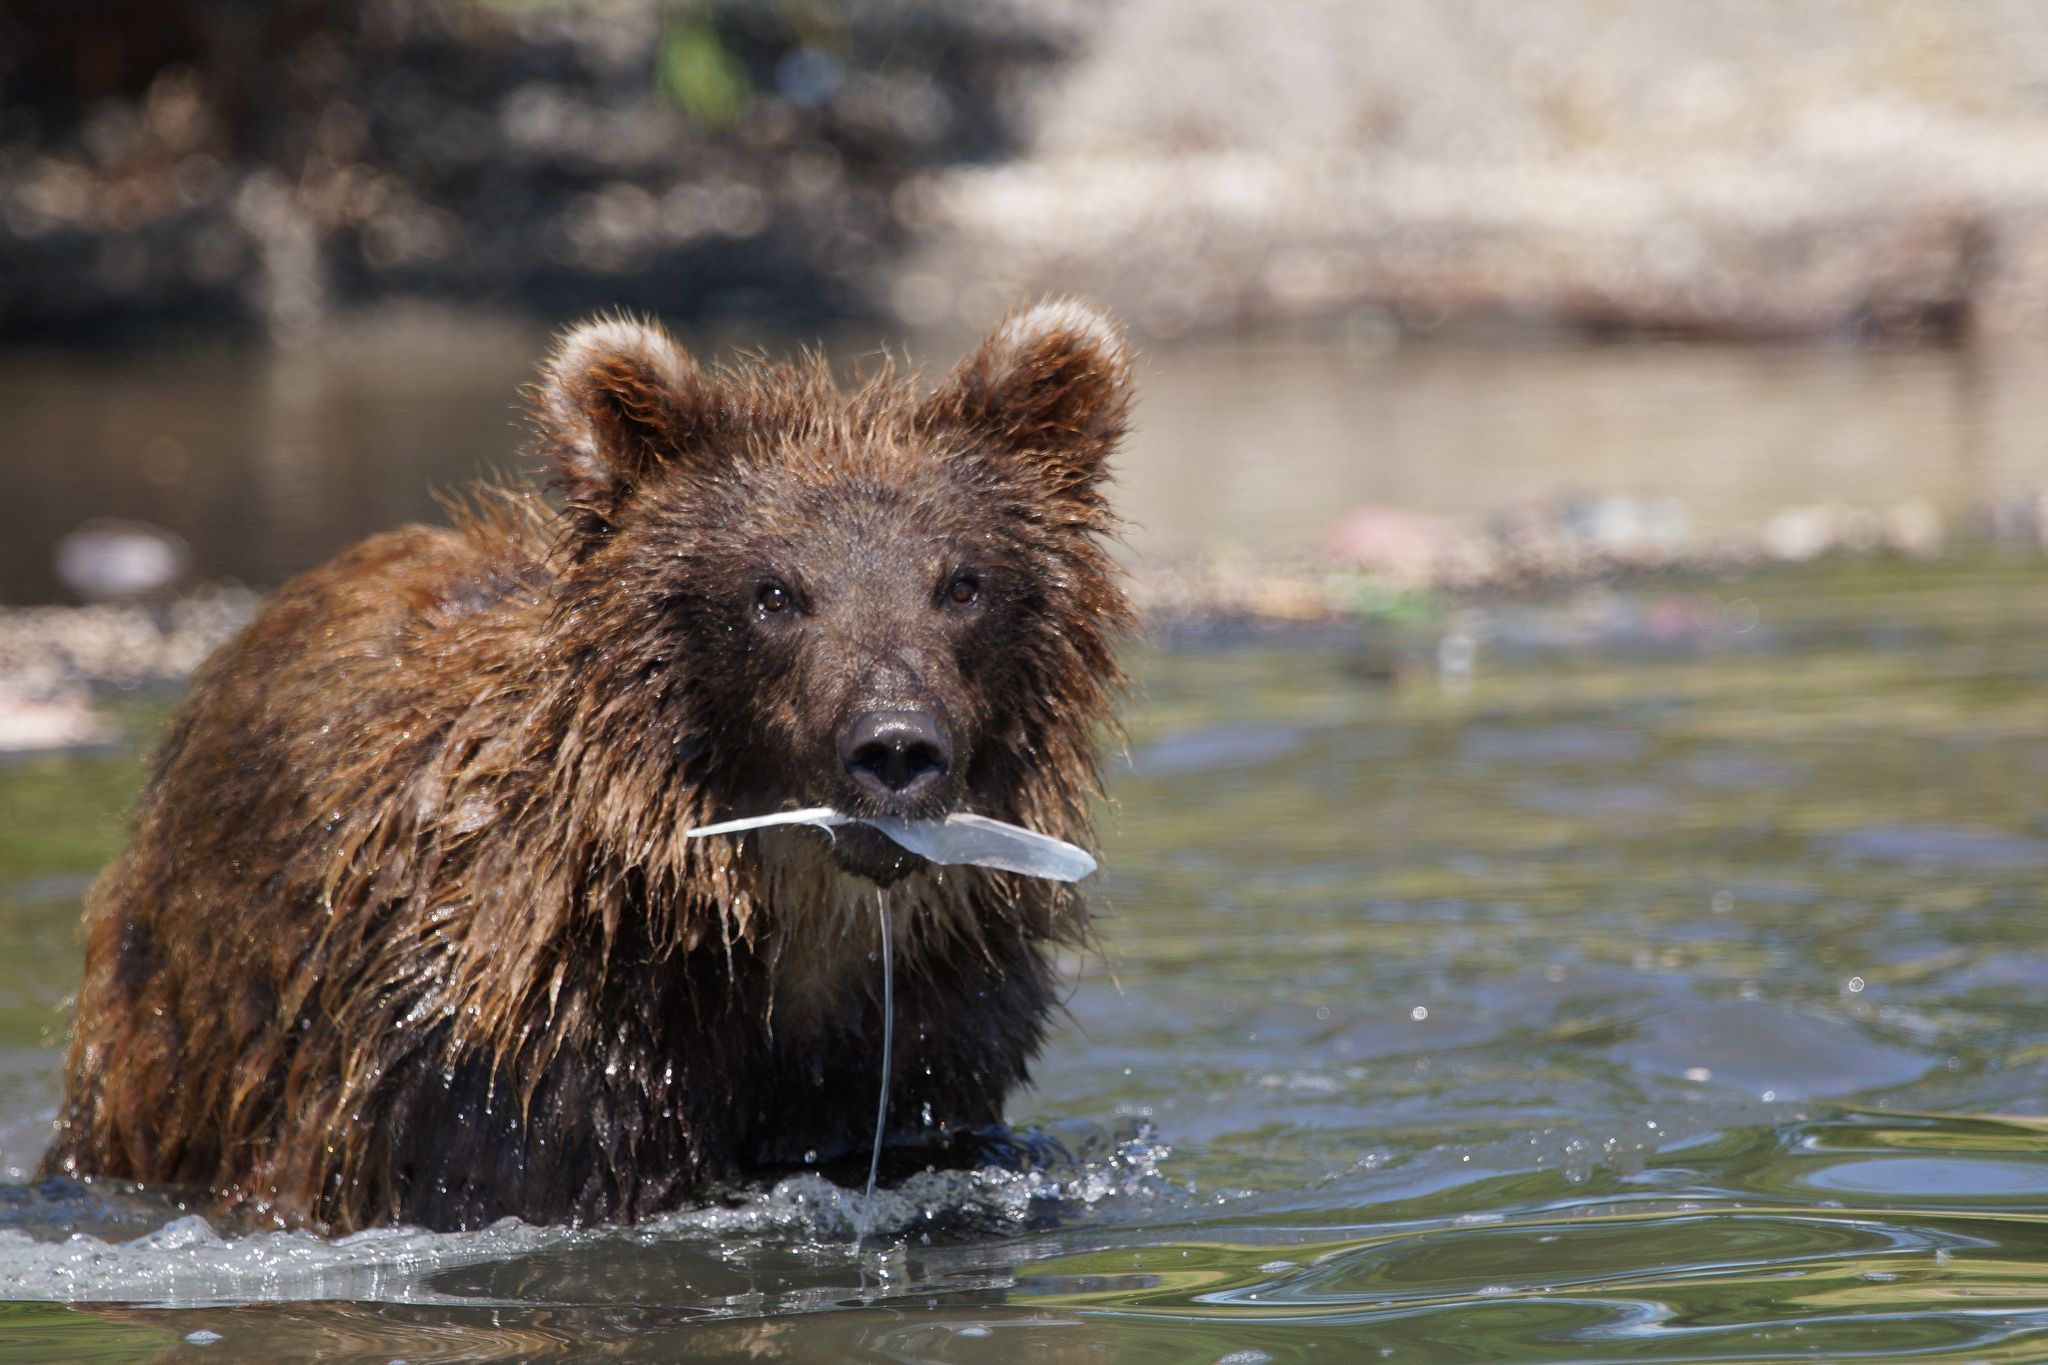 Камчатка, территория Южно-Камчатского заказника считается одним из самых медвежьих в мире, а всё из-за большого количества лосося